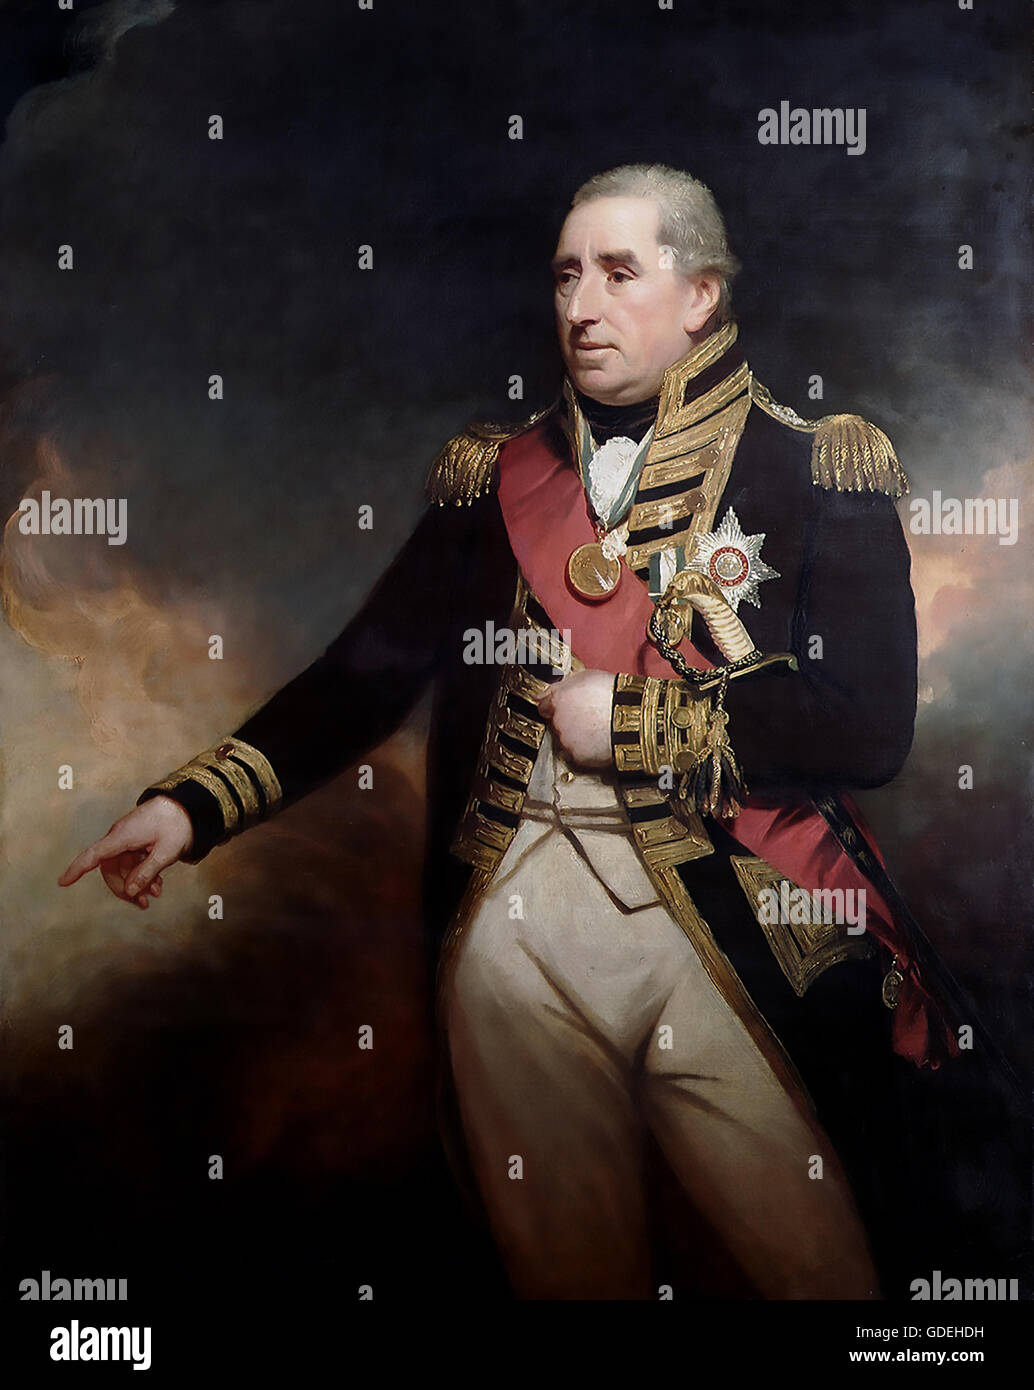 JOHN THOMAS DUCKWORTH, Offizier der Royal Navy Ist Baronet (1748-1817) und späteren Politiker gemalt von William Beechey im Jahre 1810 Stockfoto